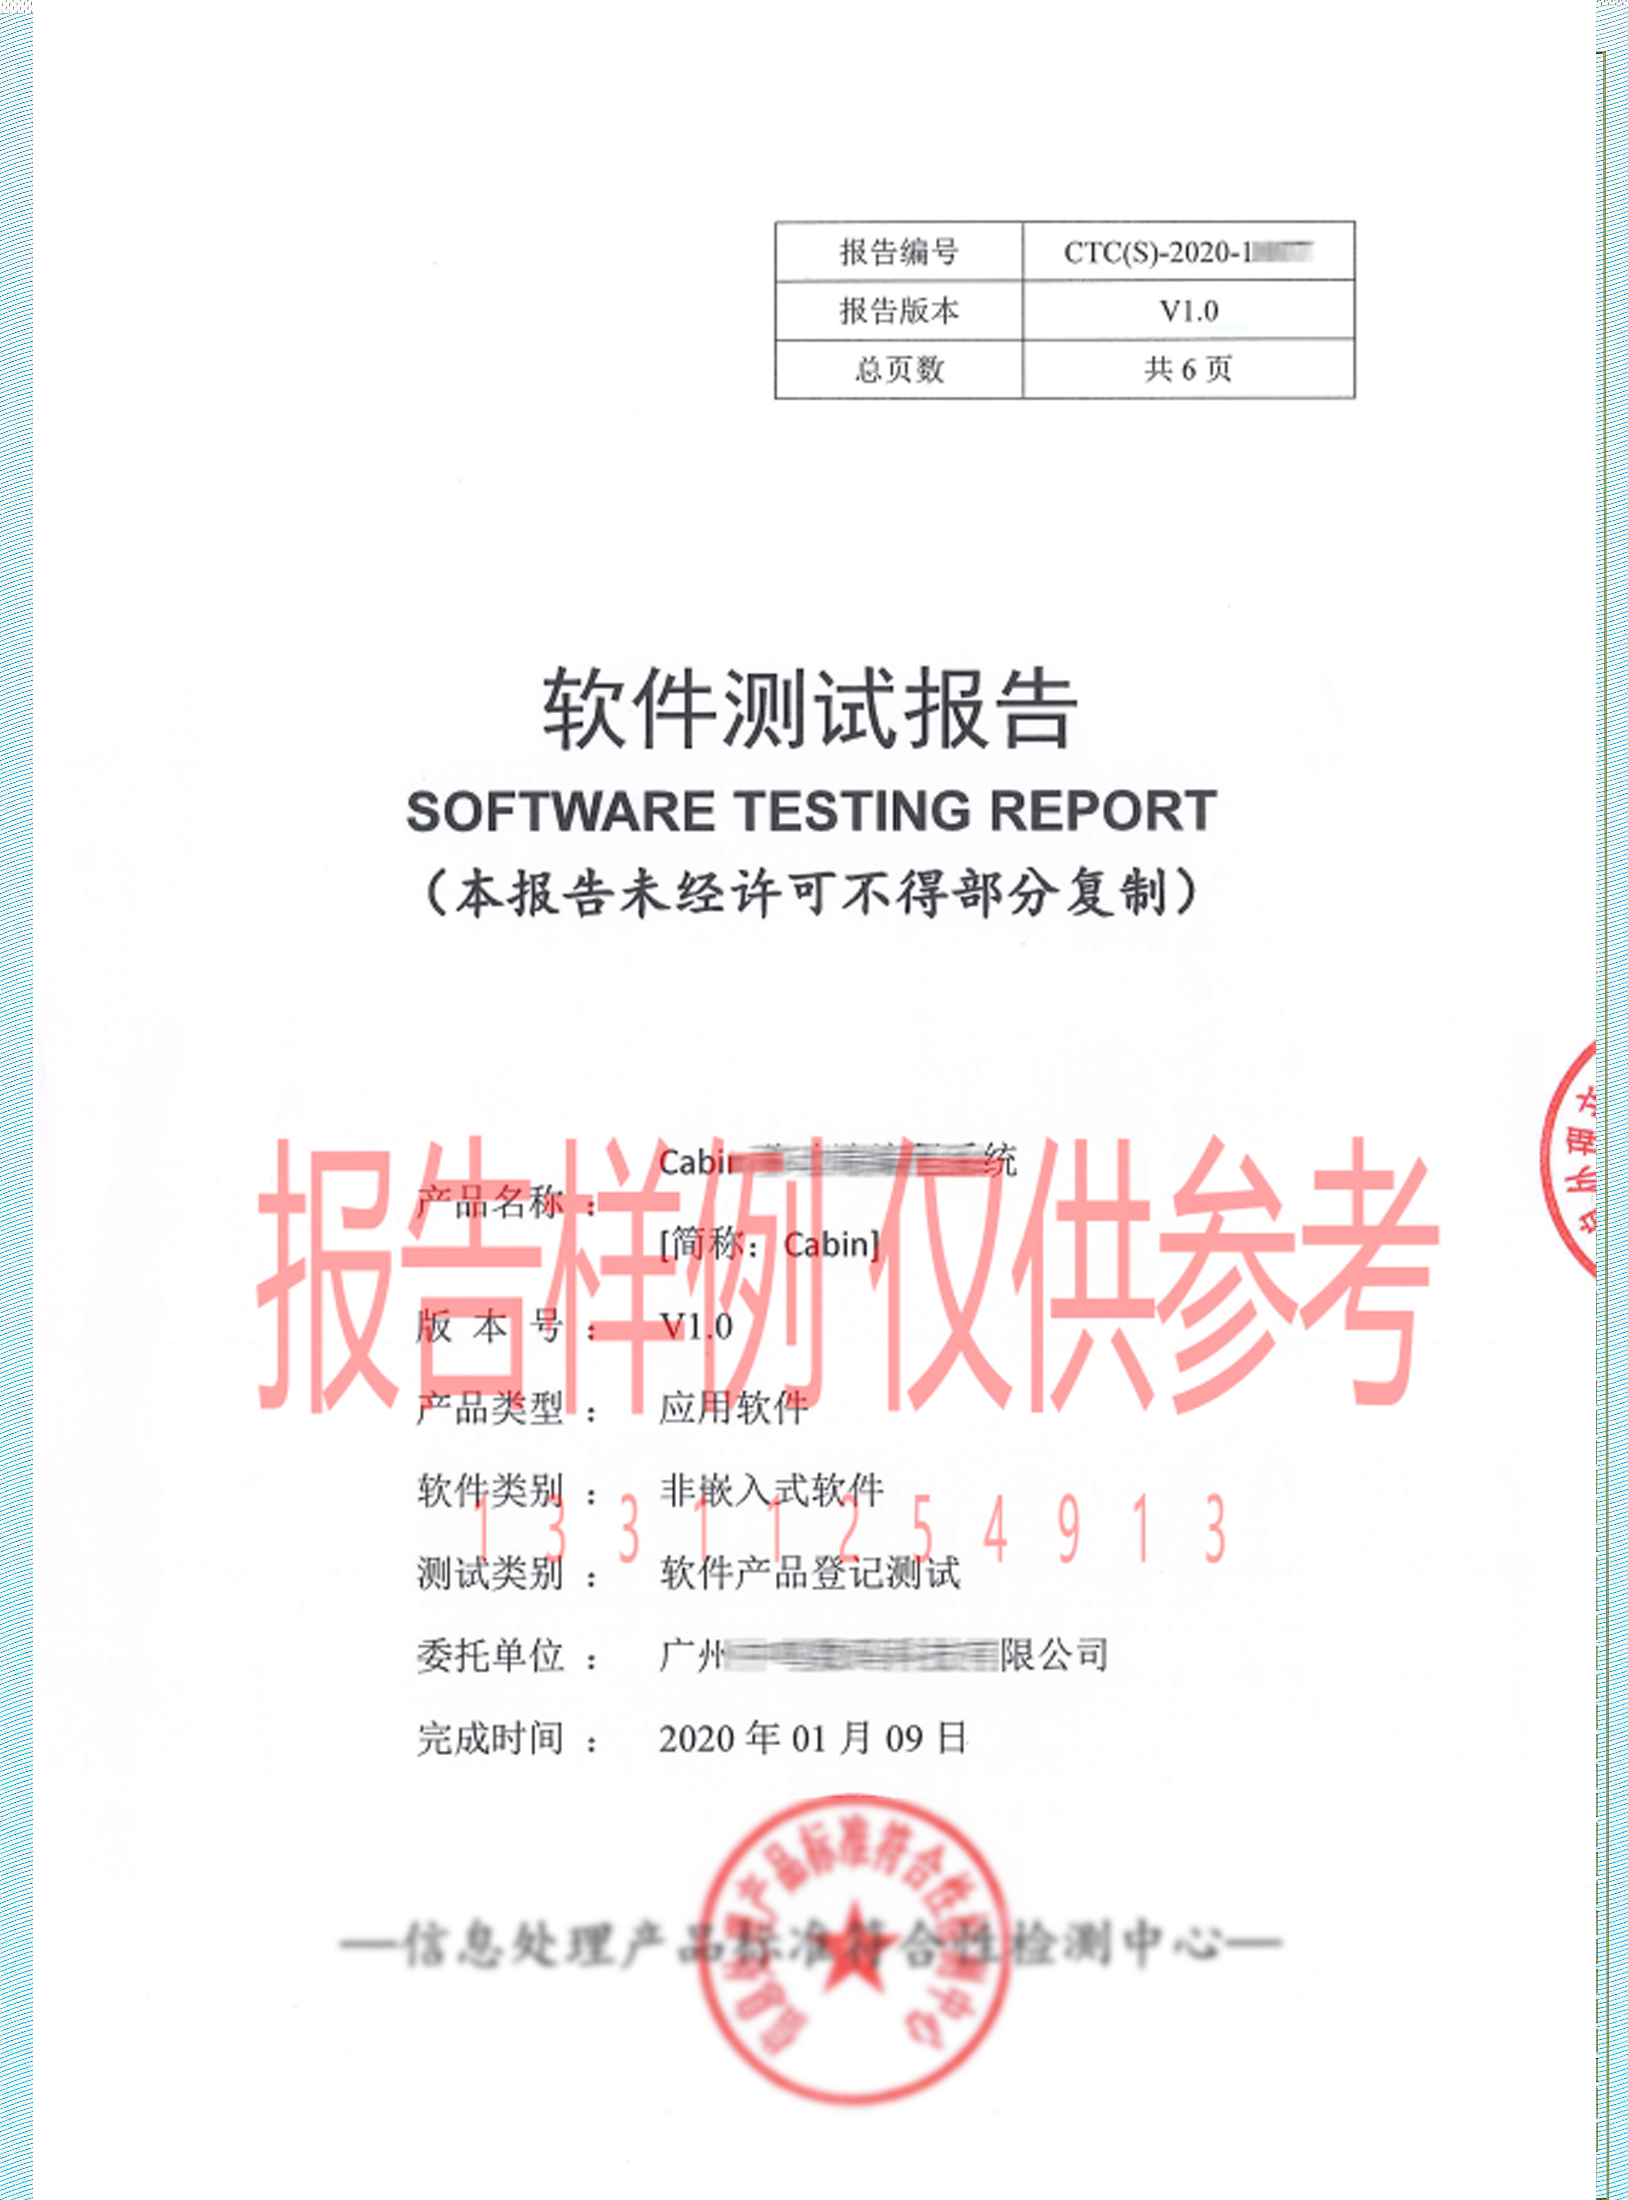 榆林软件确认测试报告_第三方软件测试